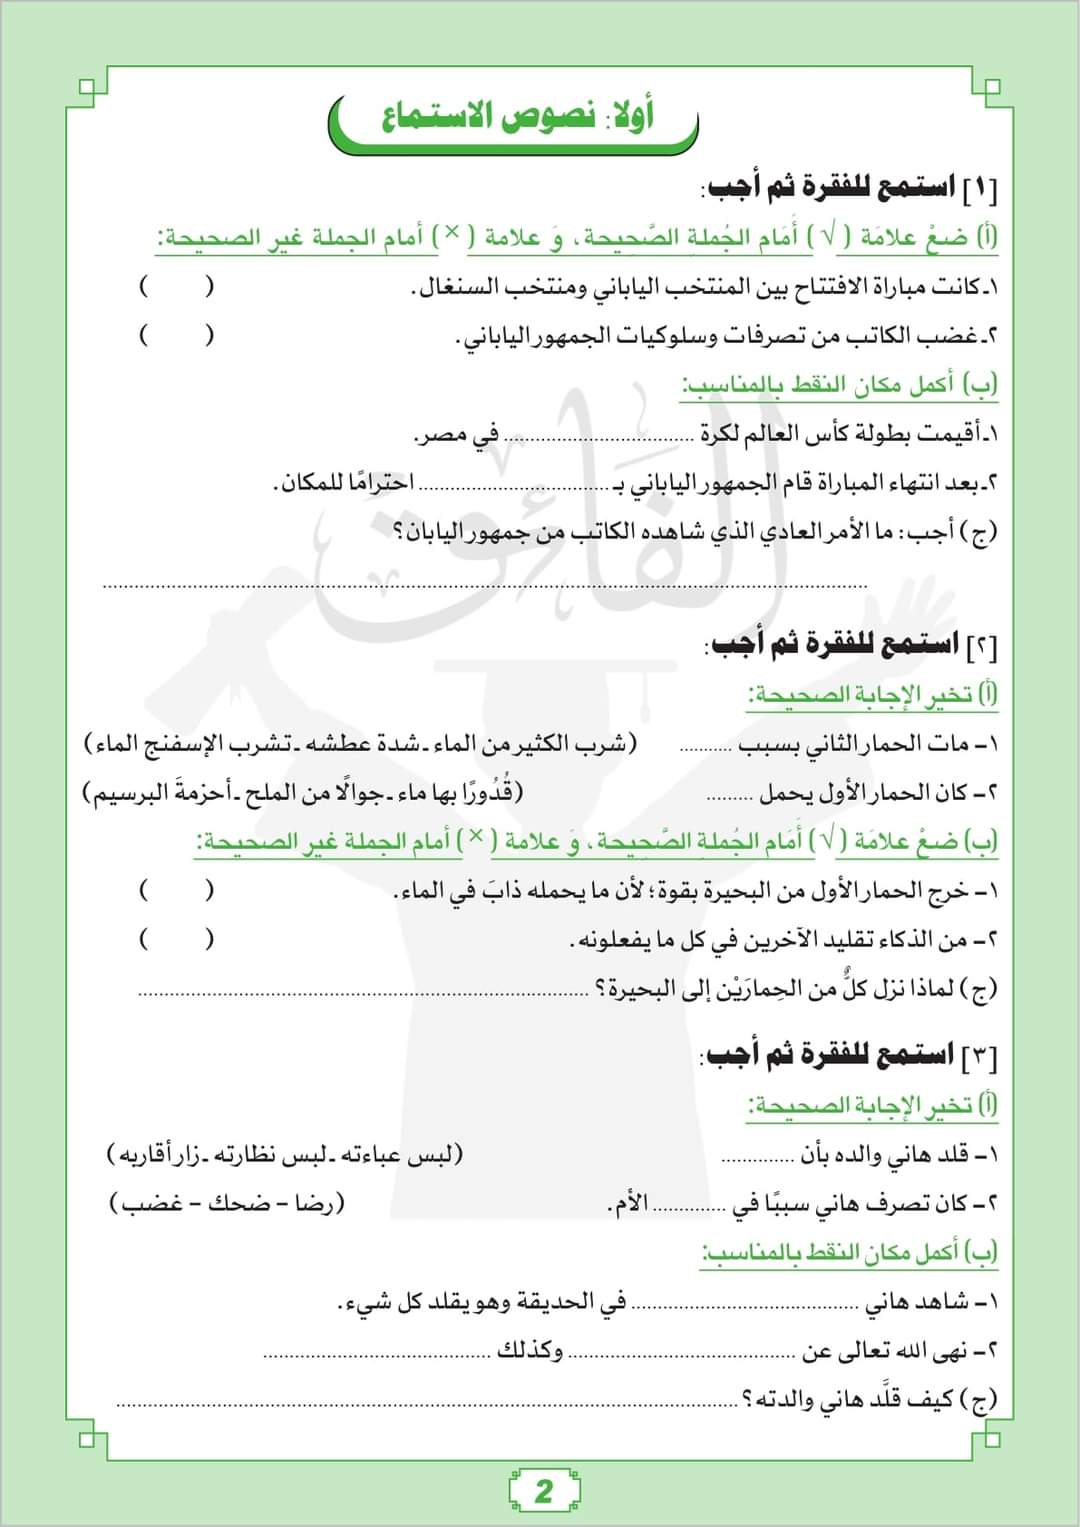 مراجعة الفائق مقرر فبراير لغة عربية الصف السادس الابتدائي مع الاجابات